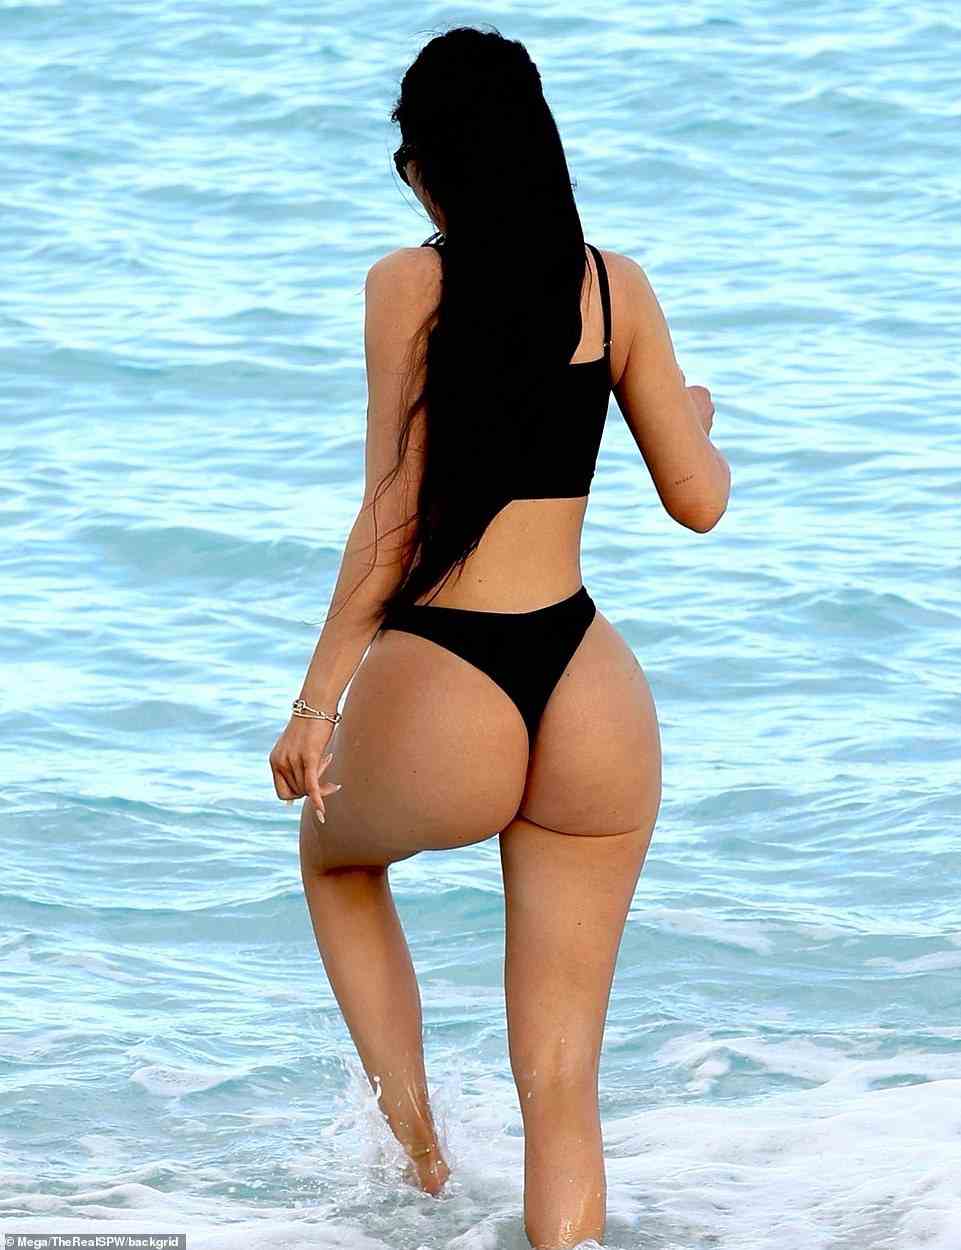 Nackt: Der Mogul von Kylie Cosmetics ging allein am Strand der Turks- und Caicosinseln in der Karibik spazieren, nachdem er ihren winzigen lindgrünen Minirock abgelegt hatte